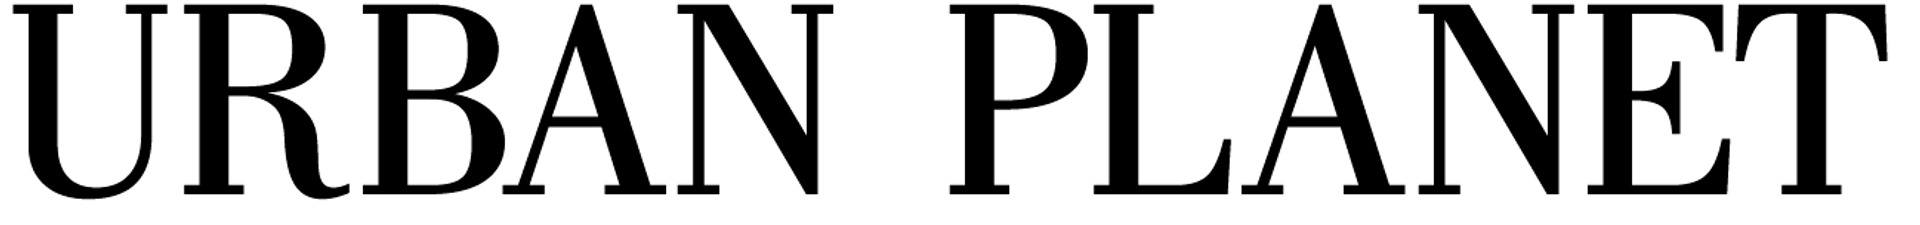 URBAN PLANET logo de circulaires